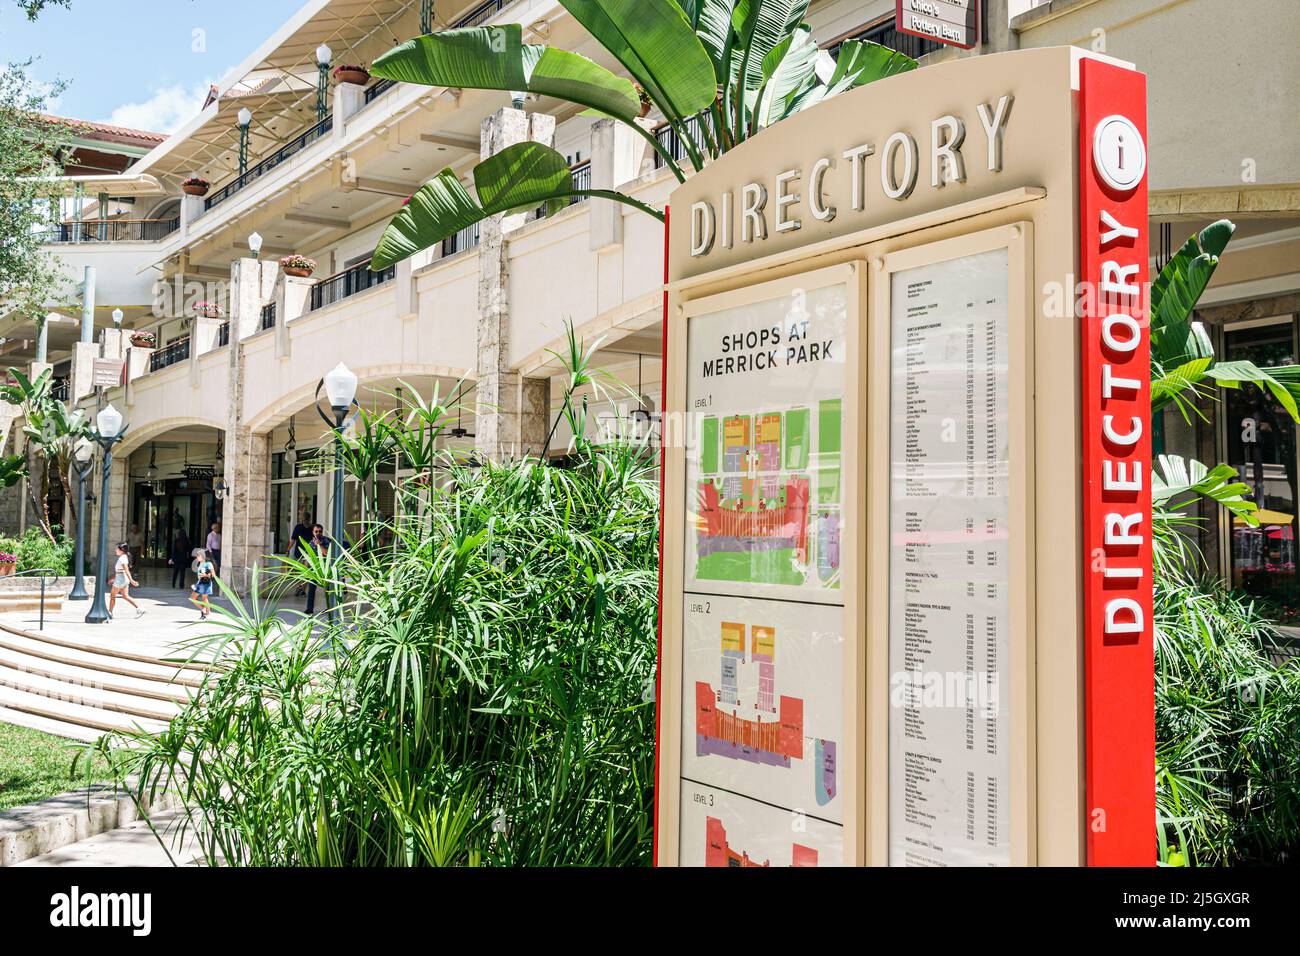 Miami Florida Coral Gables Tiendas en Merrick Park exclusivo centro comercial al aire libre tienda directorio de negocios mapa Foto de stock